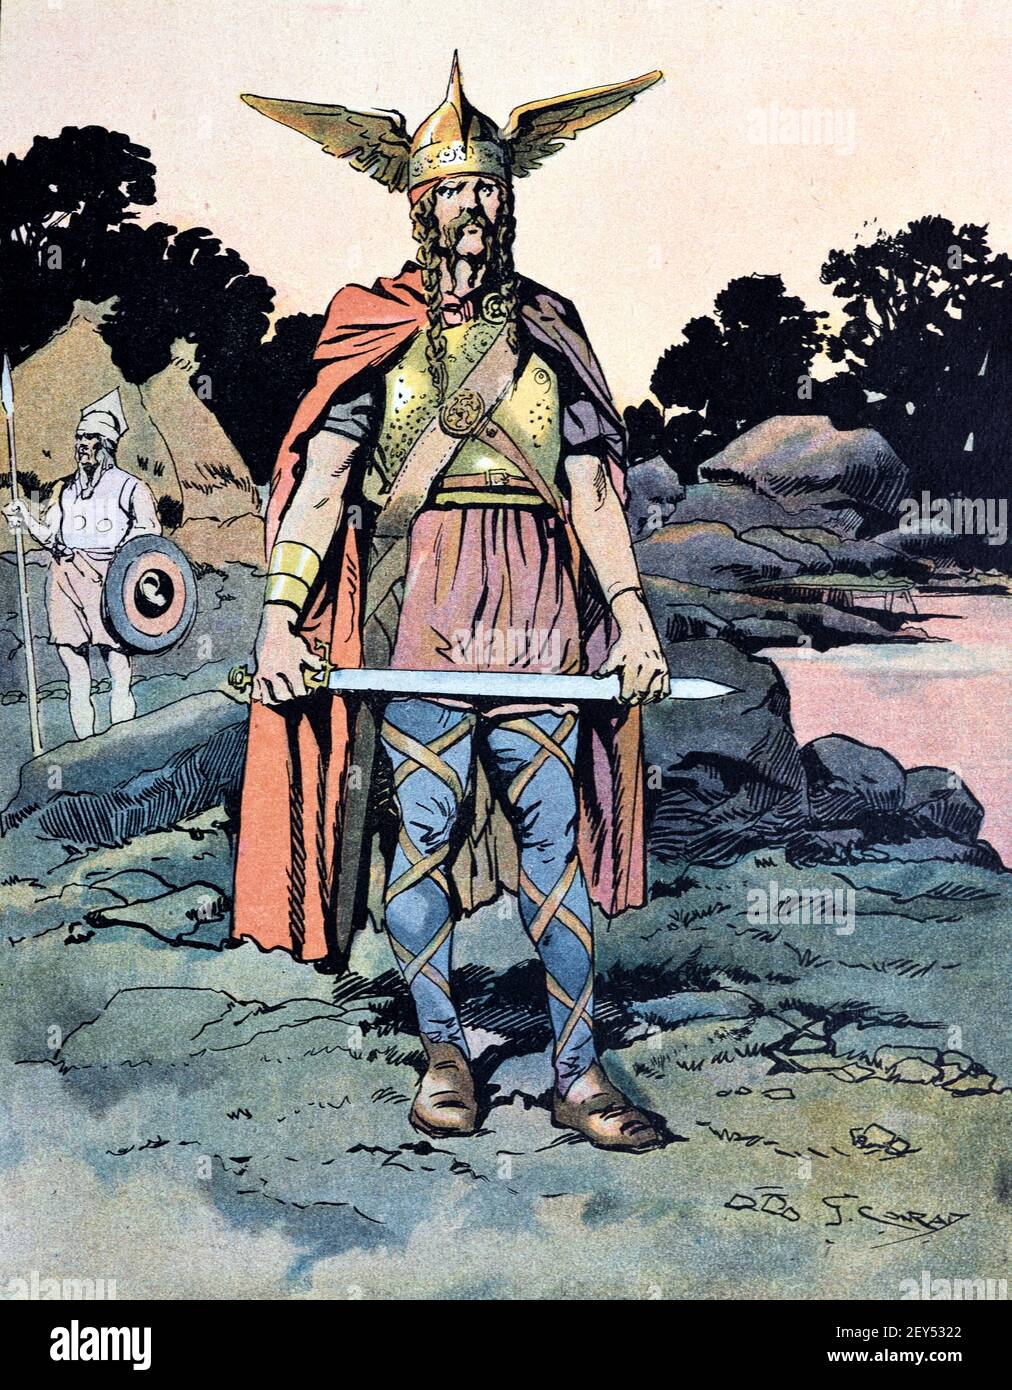 Portrait de Vercingetorix (c82BC-46BC) Roi et Chieftain de la tribu des Arveni, épée de retenue, en Gaule, France antique. Illustration ancienne c1940 Banque D'Images